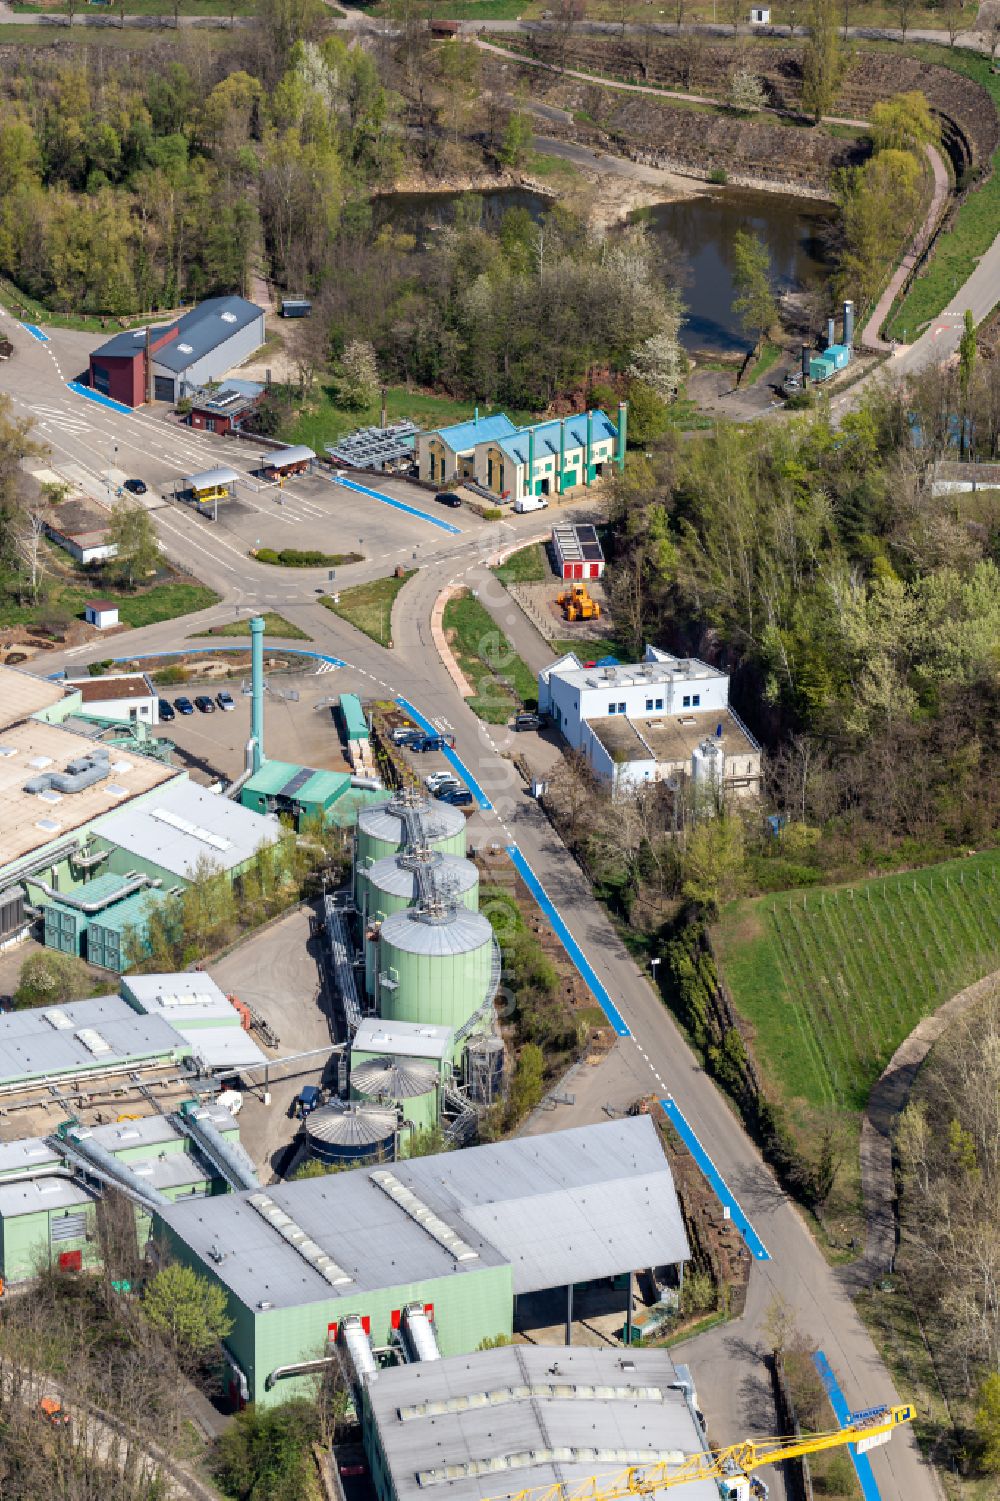 Ringsheim von oben - Baustelle zum Neubau der Müllverbrennungsanlage der ZAK in Ringsheim im Bundesland Baden-Württemberg, Deutschland